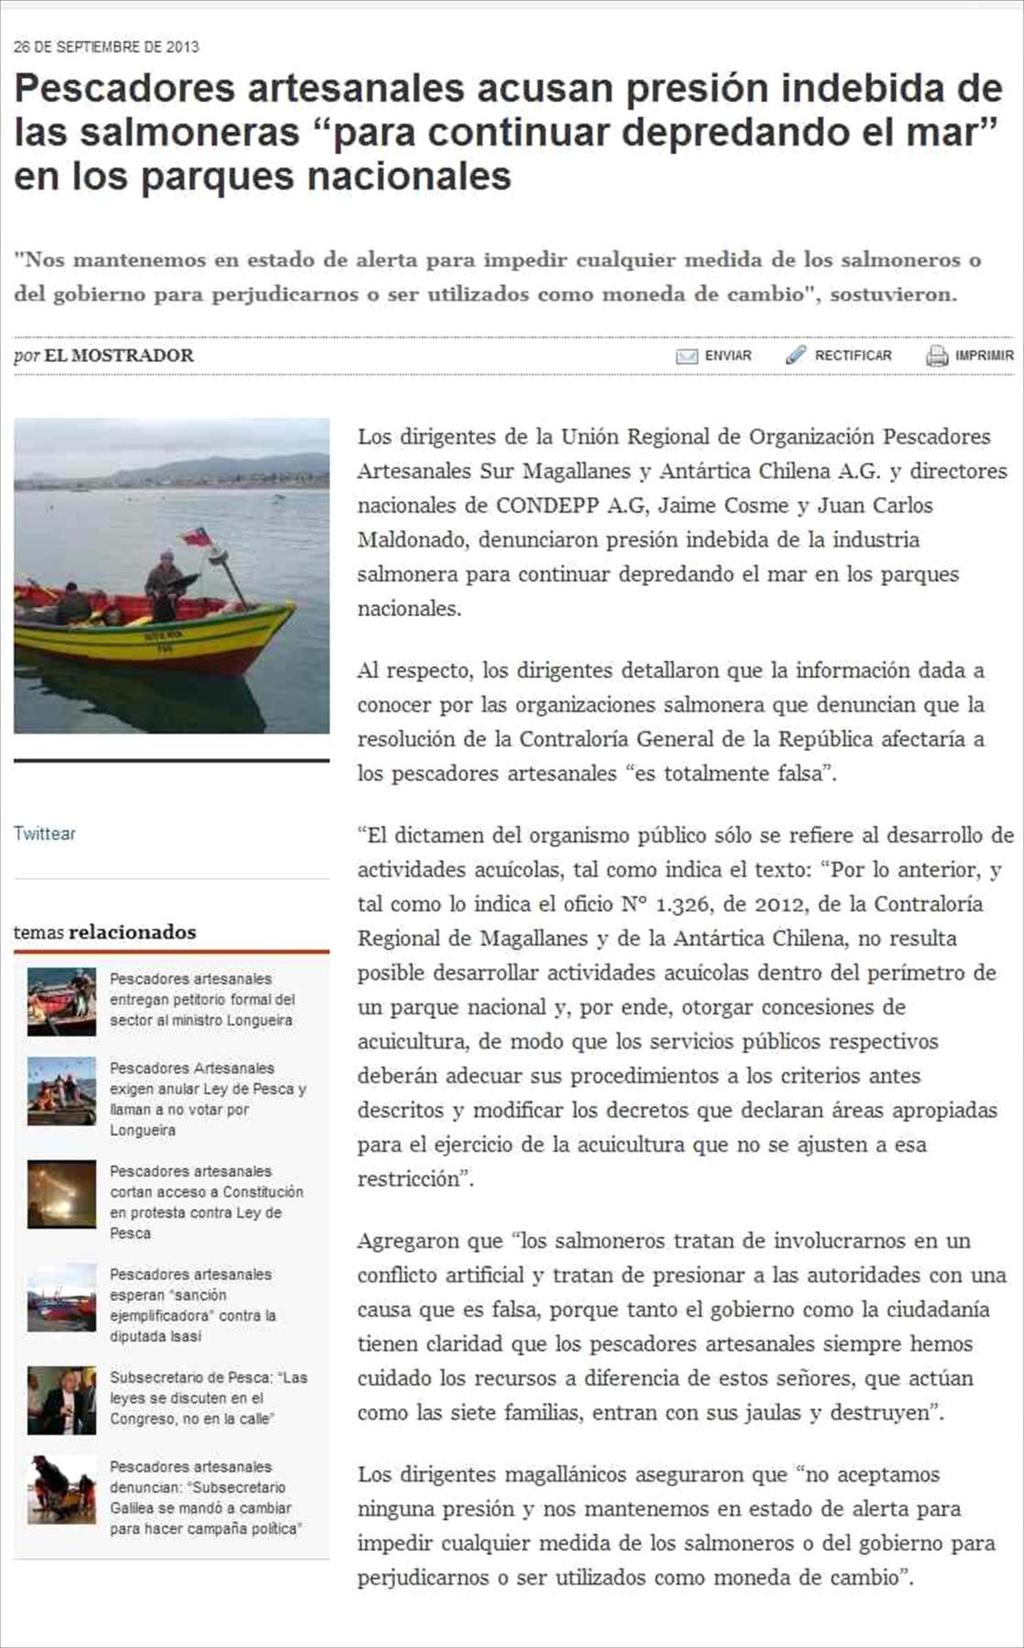 26-09-2013 EL MOSTRADOR - STGO-CHILE 44 2 PESCADORES ARTESANALES ACUSAN PRESION INDEBIDA